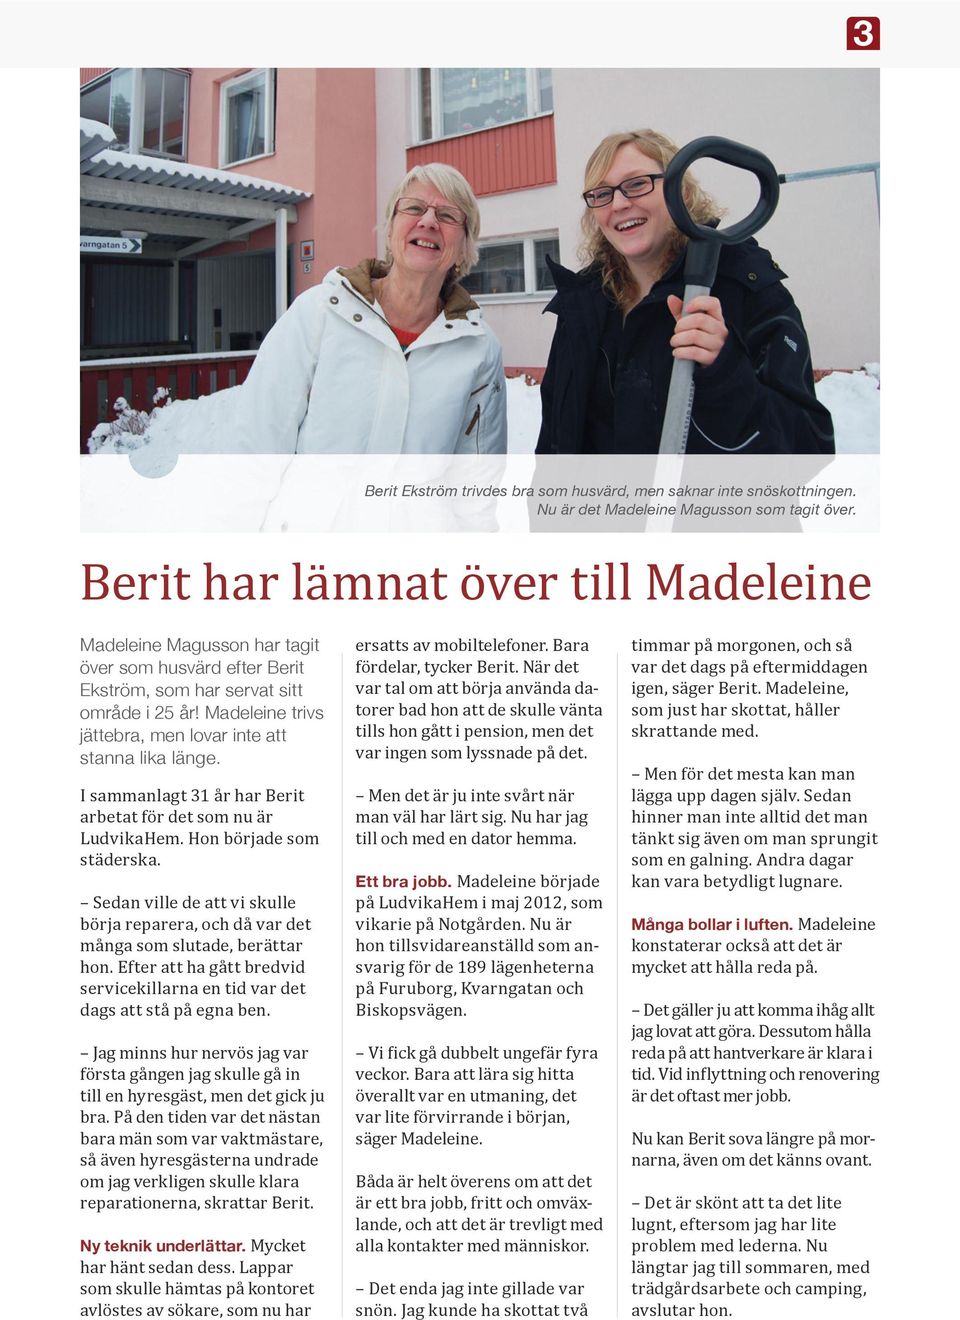 Madeleine trivs jättebra, men lovar inte att stanna lika länge. I sammanlagt 31 år har Berit arbetat för det som nu är LudvikaHem. Hon började som städerska.